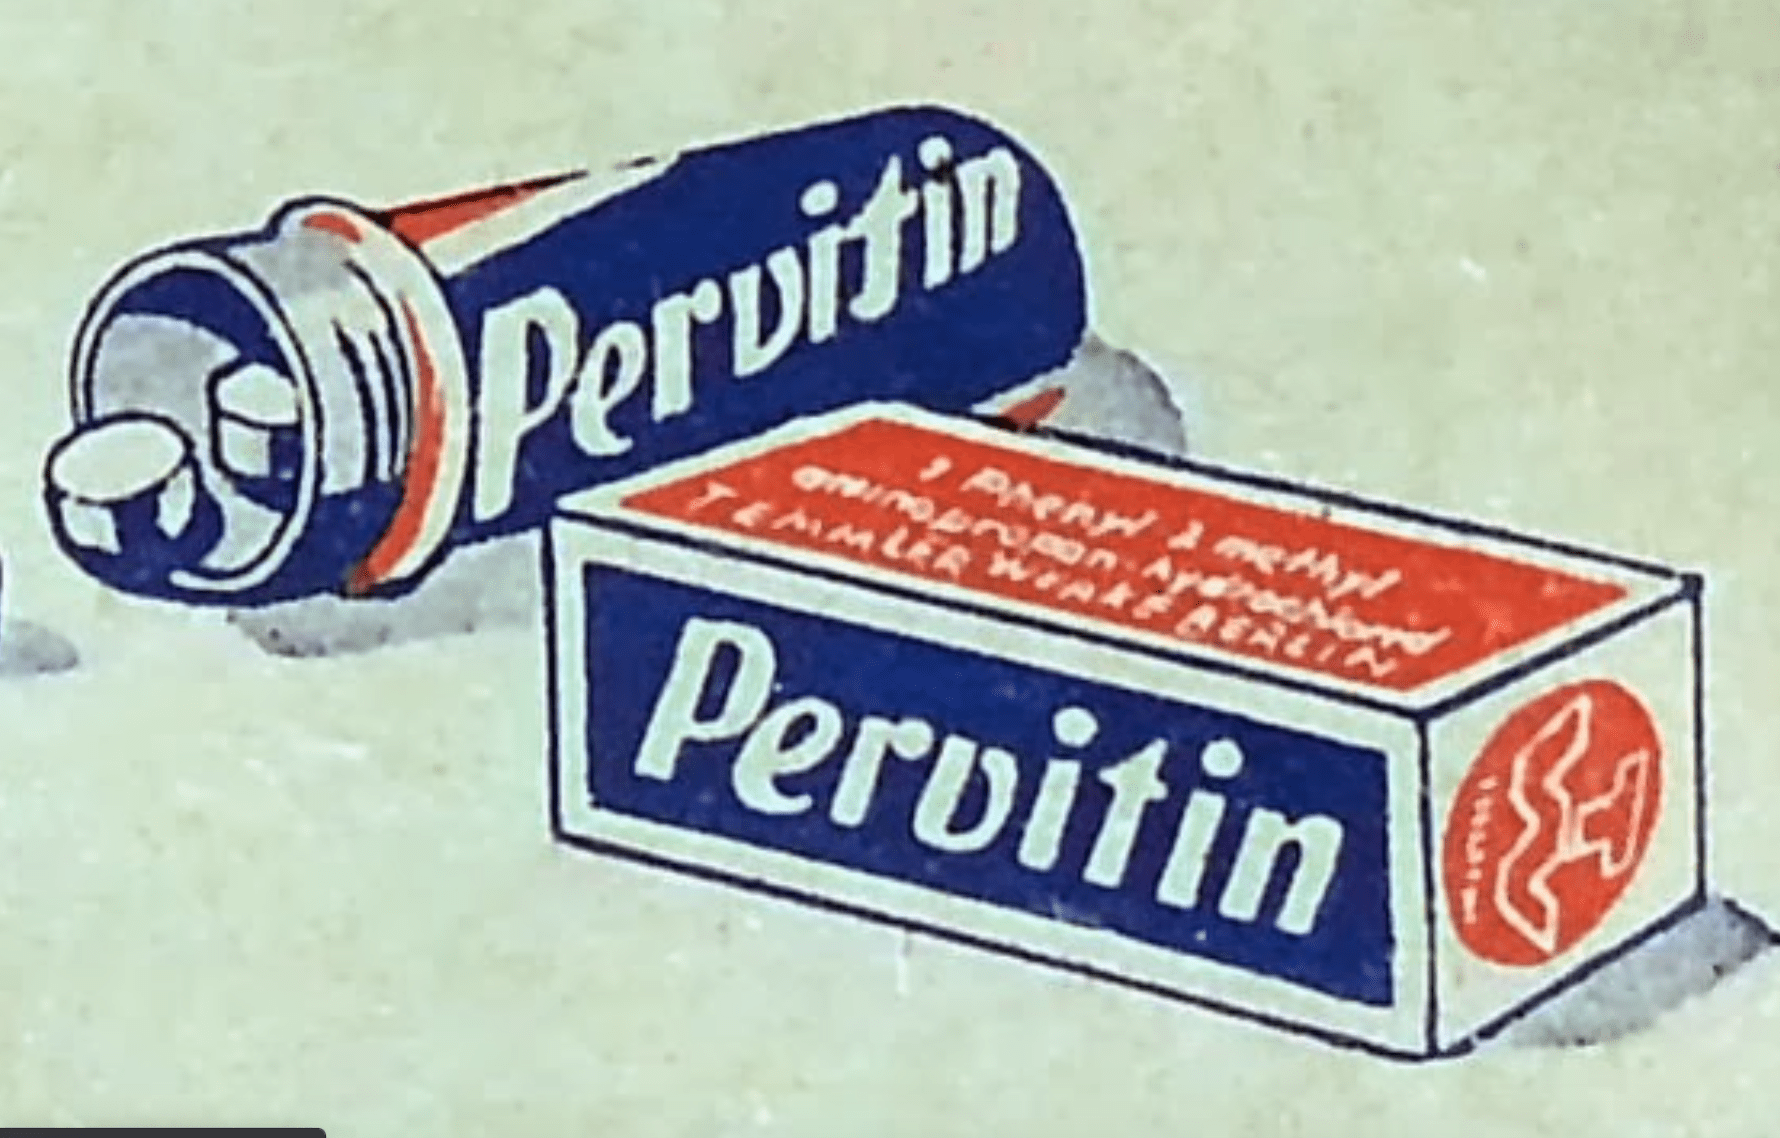 La Pervitine, ou la drogue préférée du régime nazi - Cultea